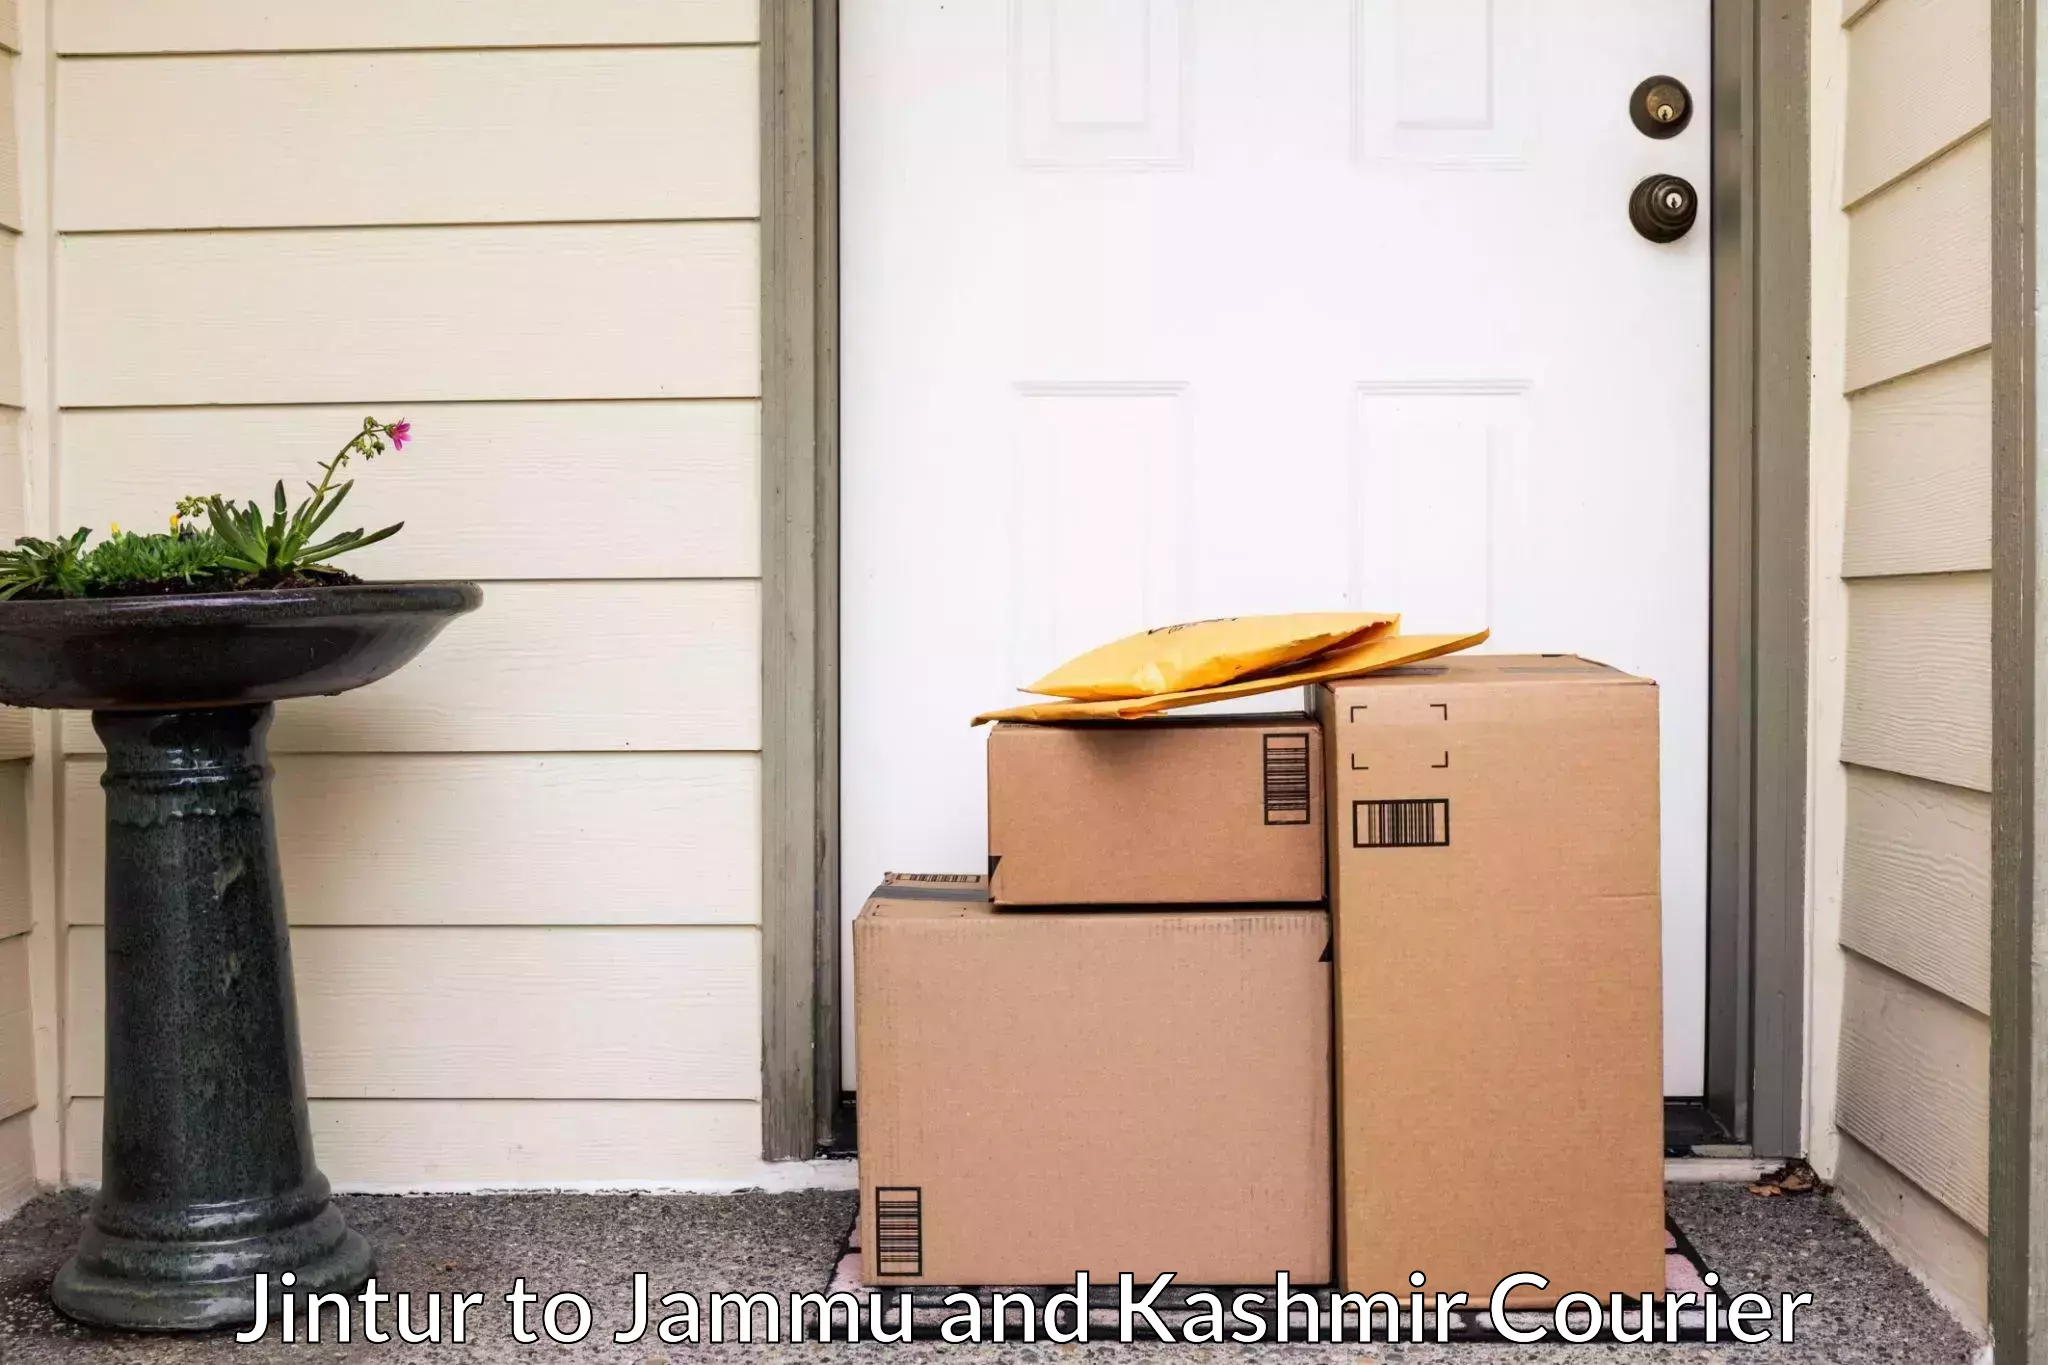 Furniture moving experts Jintur to Jammu and Kashmir